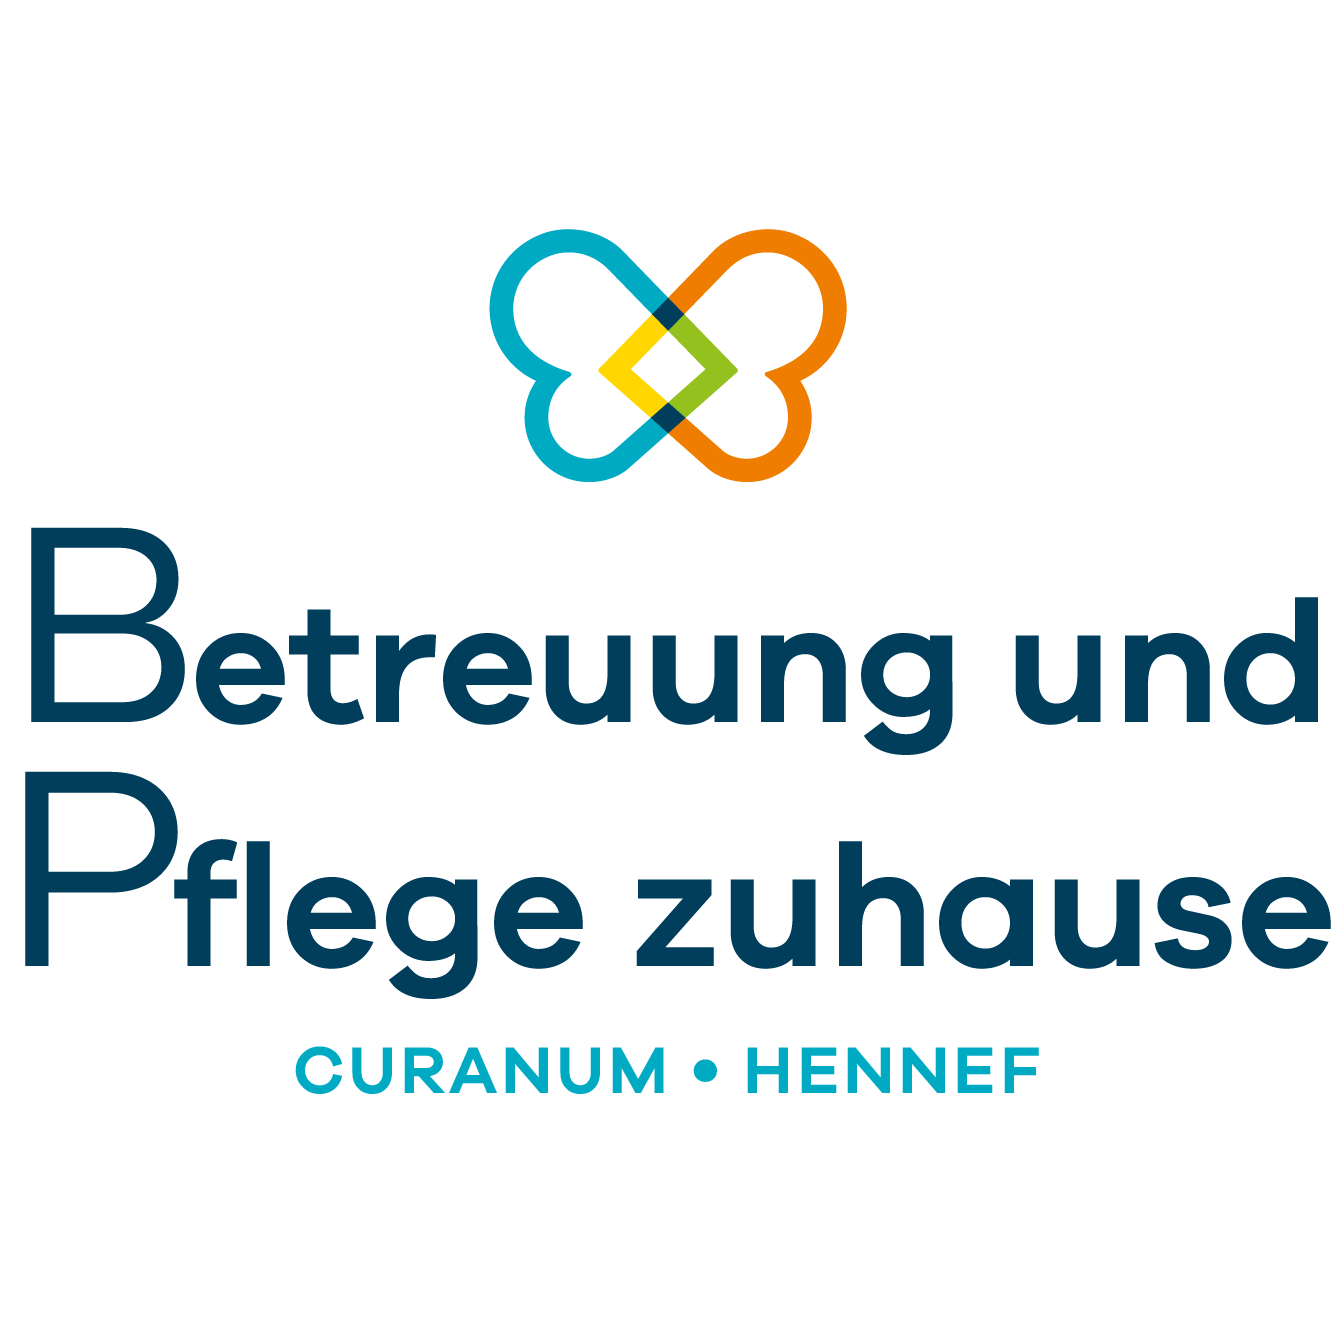 Betreuung und Pflege zuhause Curanum Hennef in Hennef an der Sieg - Logo